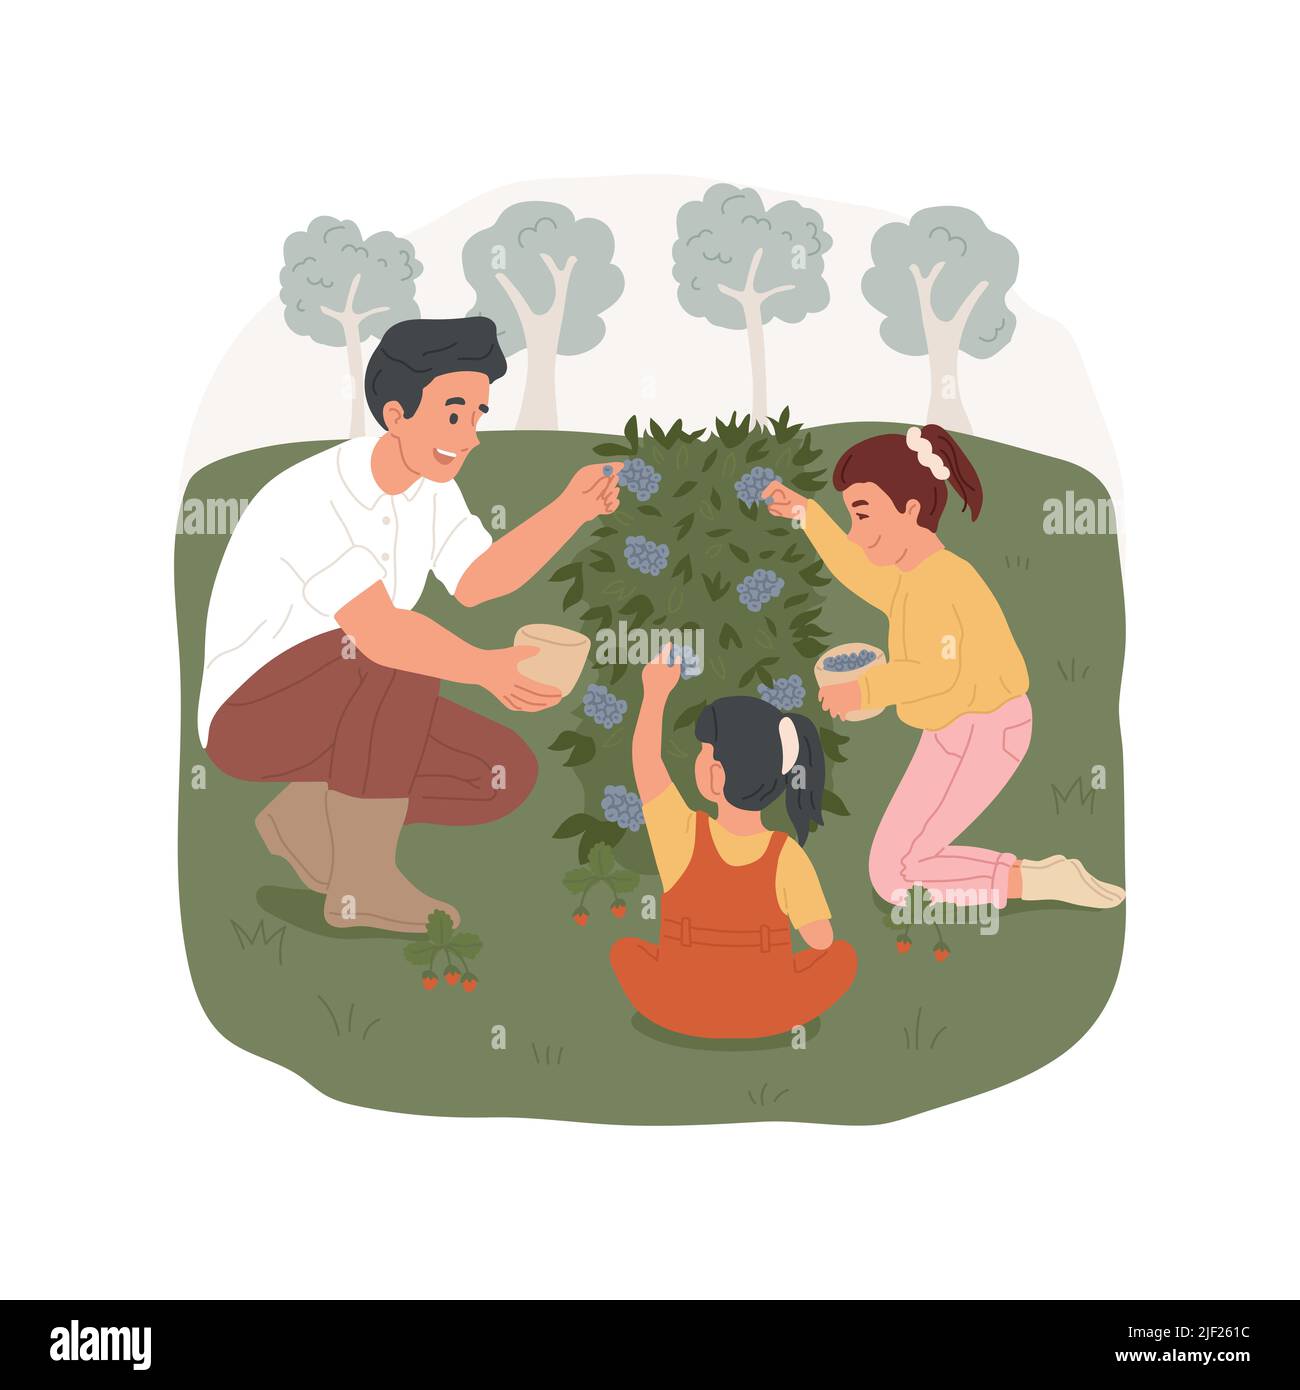 Sammeln Sie wilde Beeren isoliert Cartoon-Vektor-Illustration. Eltern und Kinder, die im Wald spazieren, Beeren auf der Lichtung sammeln, Campingaktivitäten, vom Busch pflücken, Eimer Vektorgrafik halten. Stock Vektor